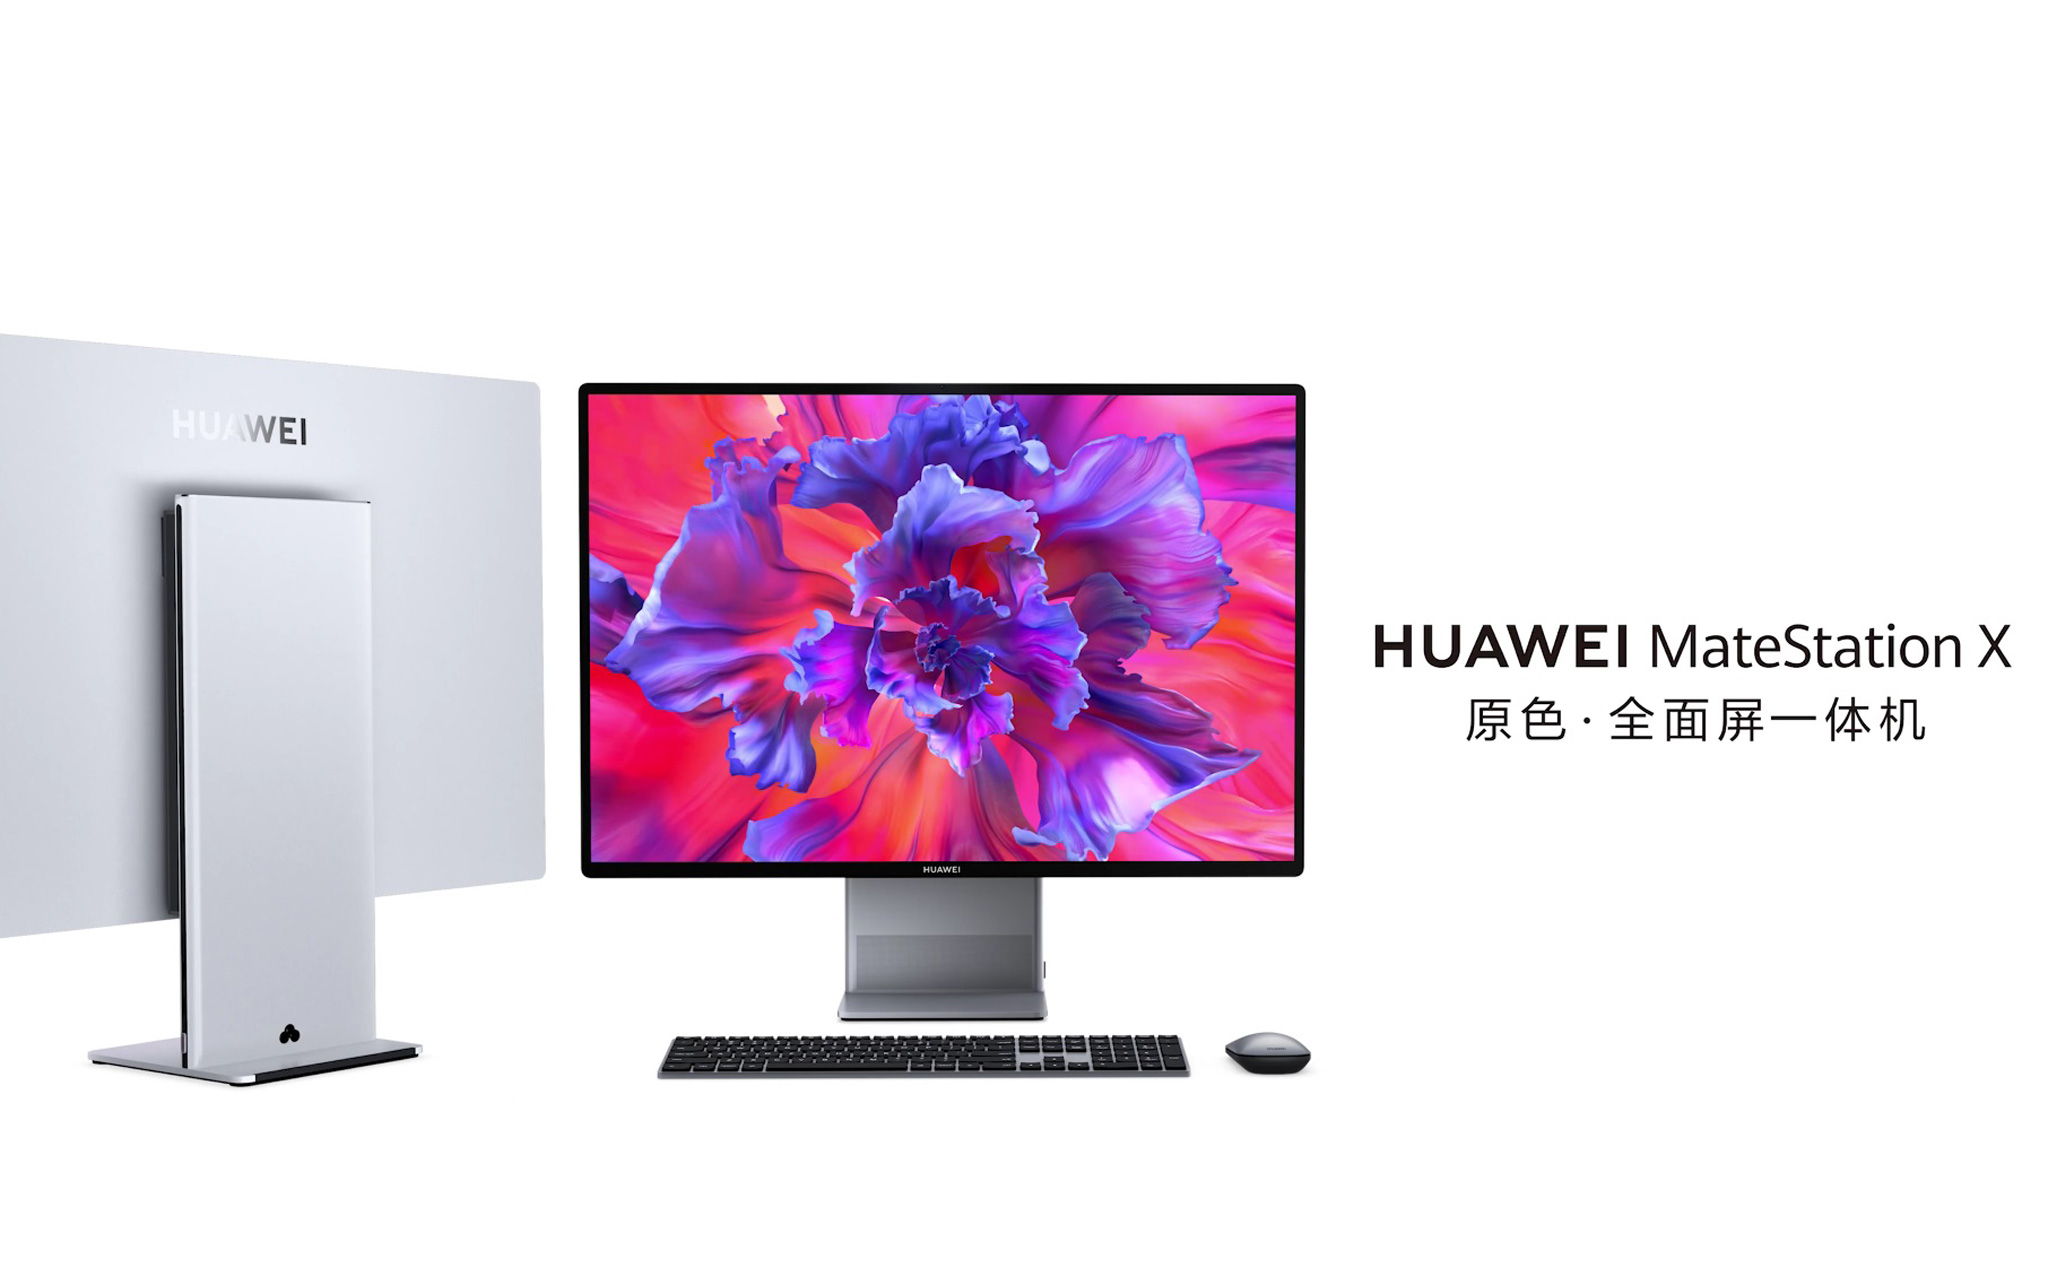 Huawei ra mắt MateStation X: PC All-in-One đầu tiên, màn hình cảm ứng 4K+, bộ xử lý AMD Ryzen